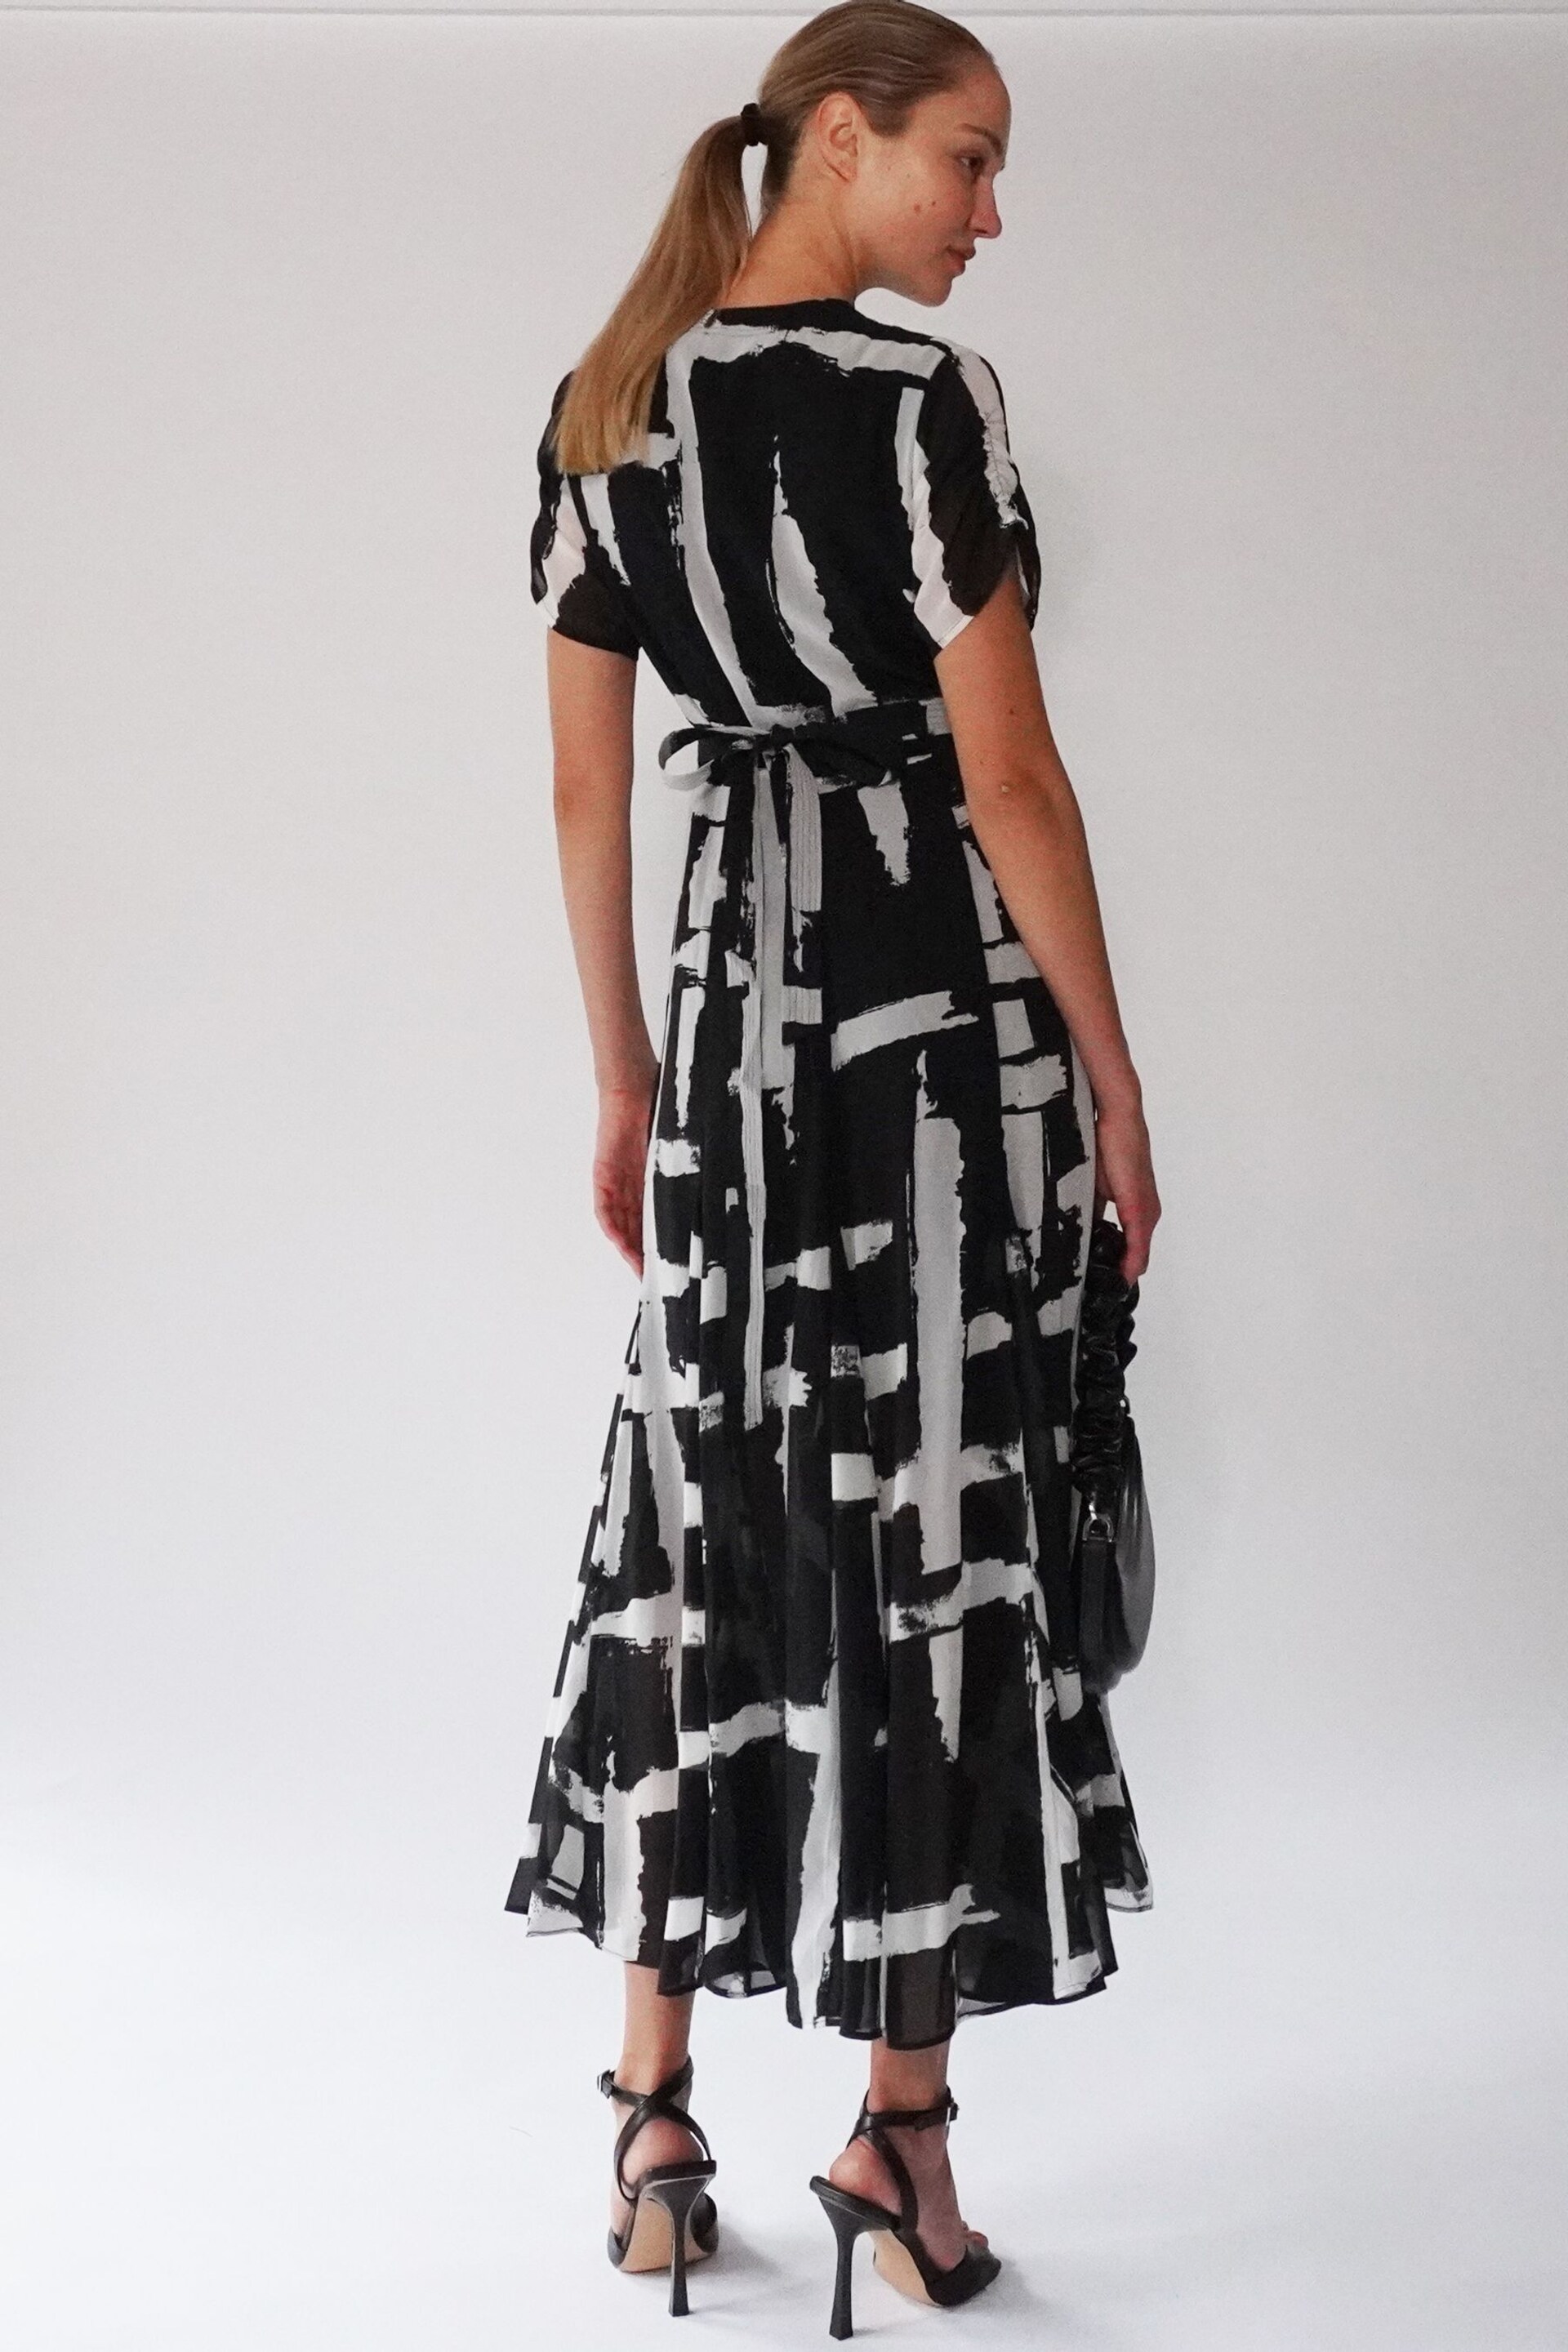 Religion Black White Wrap Dress With Full Skirt - Image 3 of 6